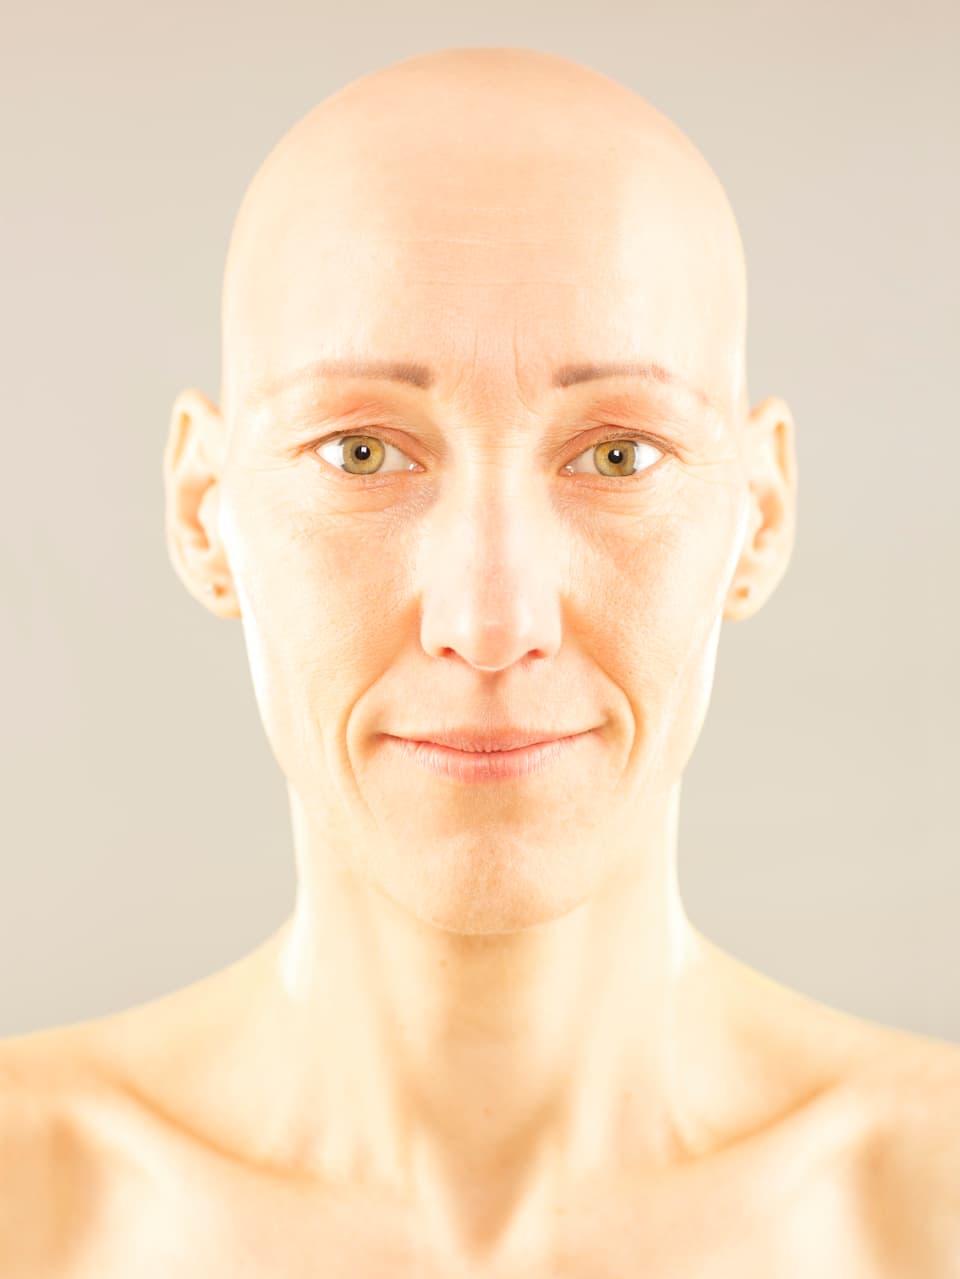 Porträt: Nahaufnahme einer Frau mit Glatze vor grauem Hintergrund.